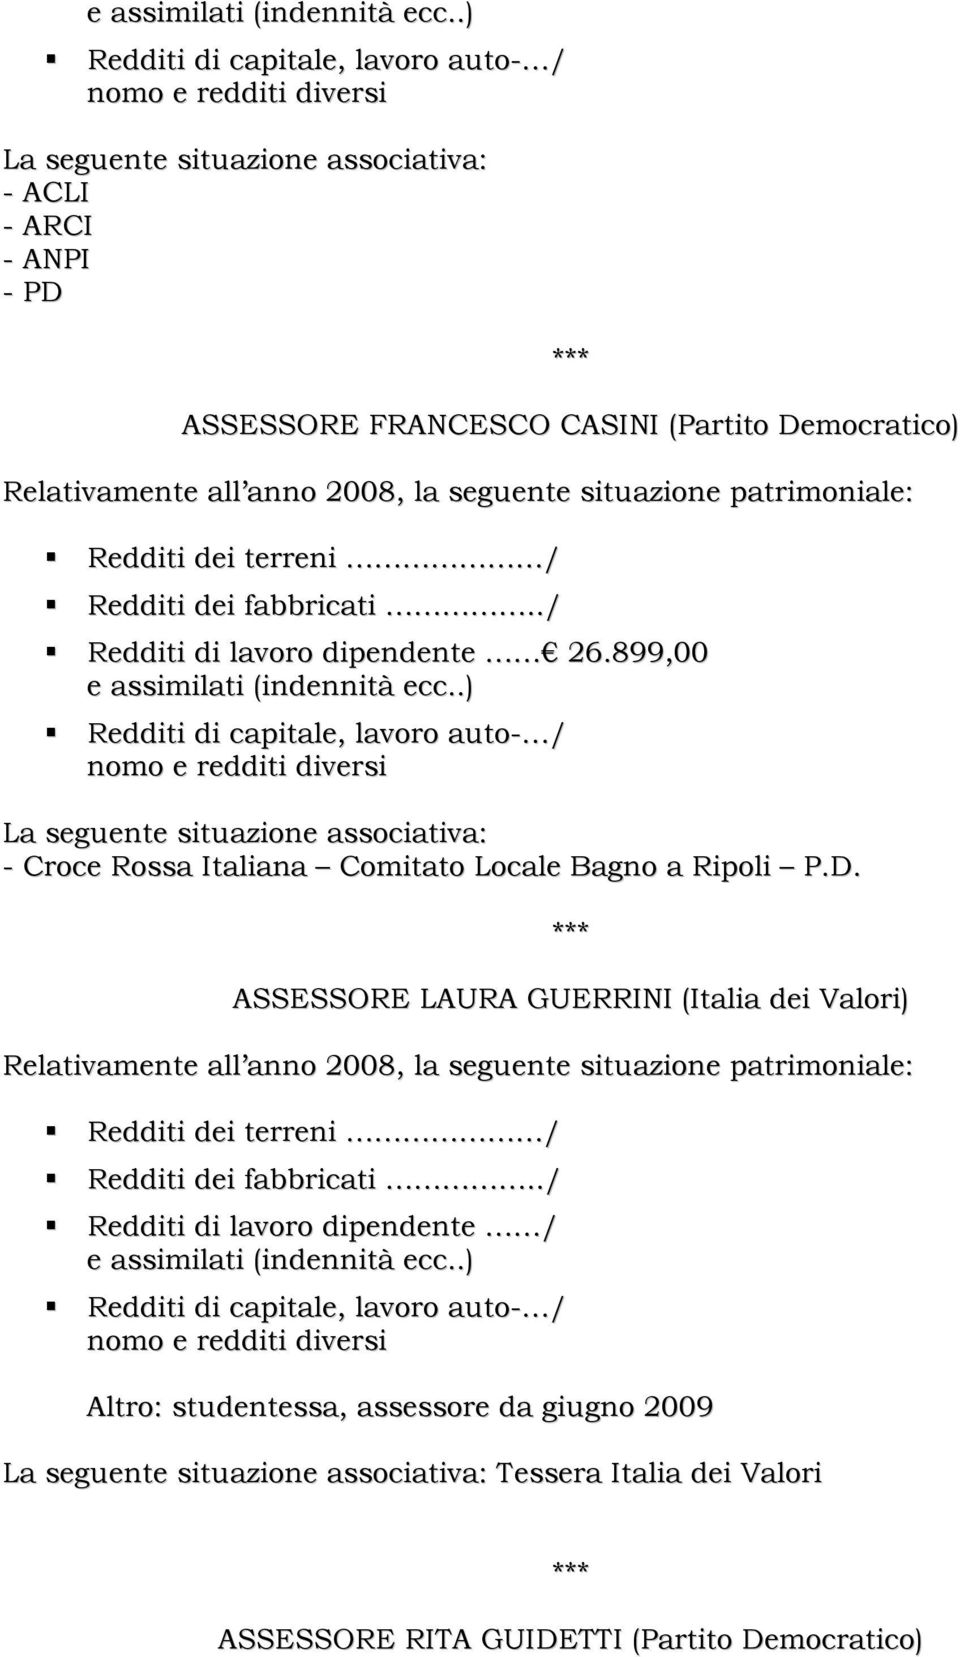 ASSESSORE LAURA GUERRINI (Italia dei Valori) Redditi di lavoro dipendente / Altro: